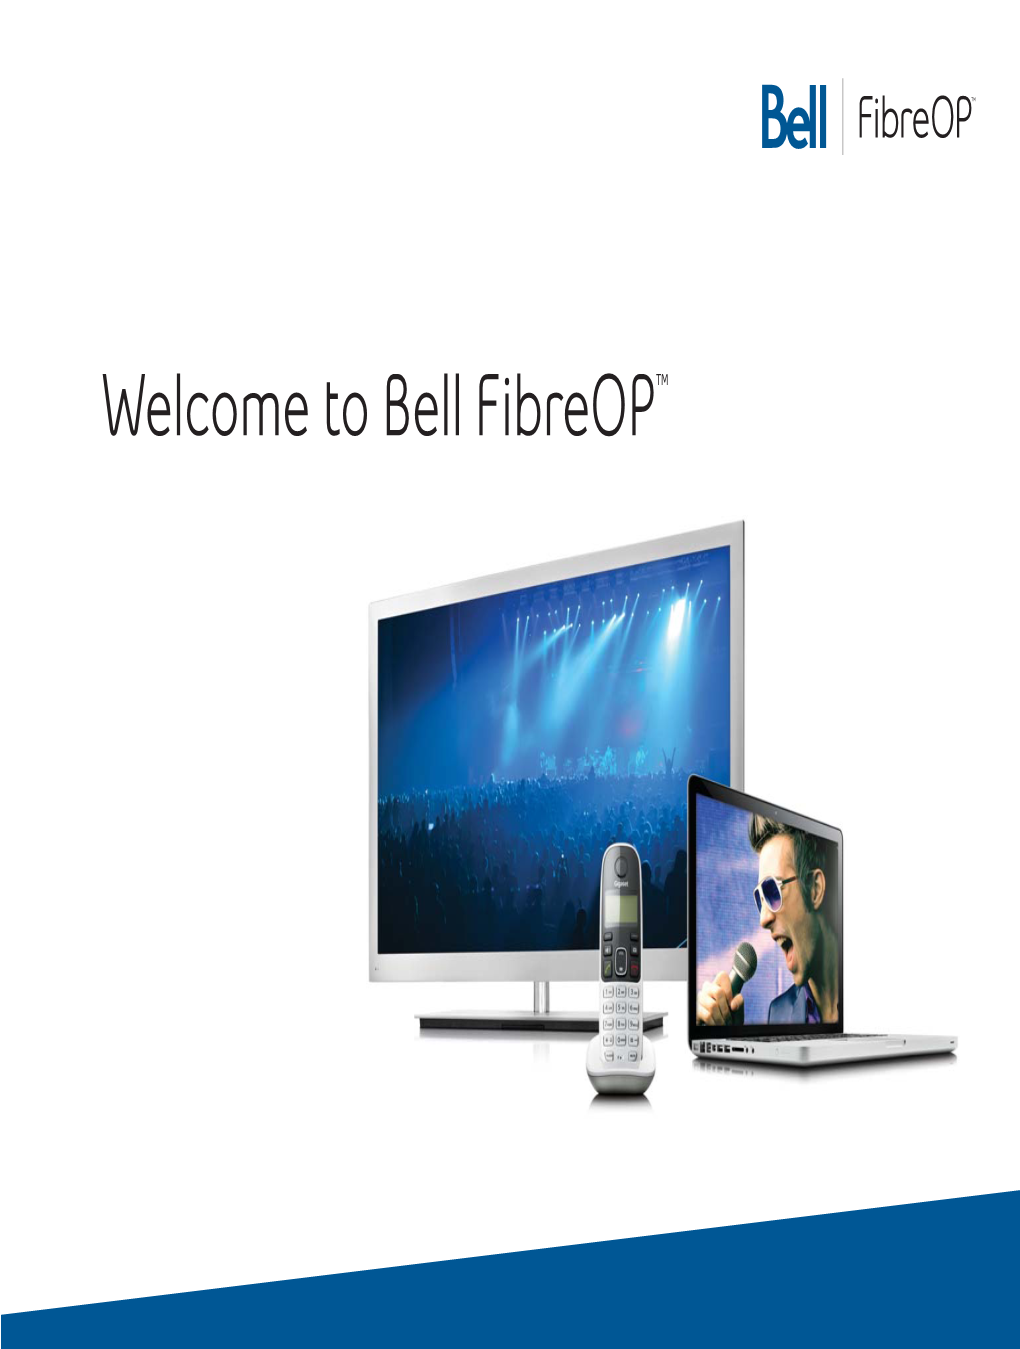 201205-Bell Fibreop Welcome Guide–12BELLFIBOP15-EN.Indd